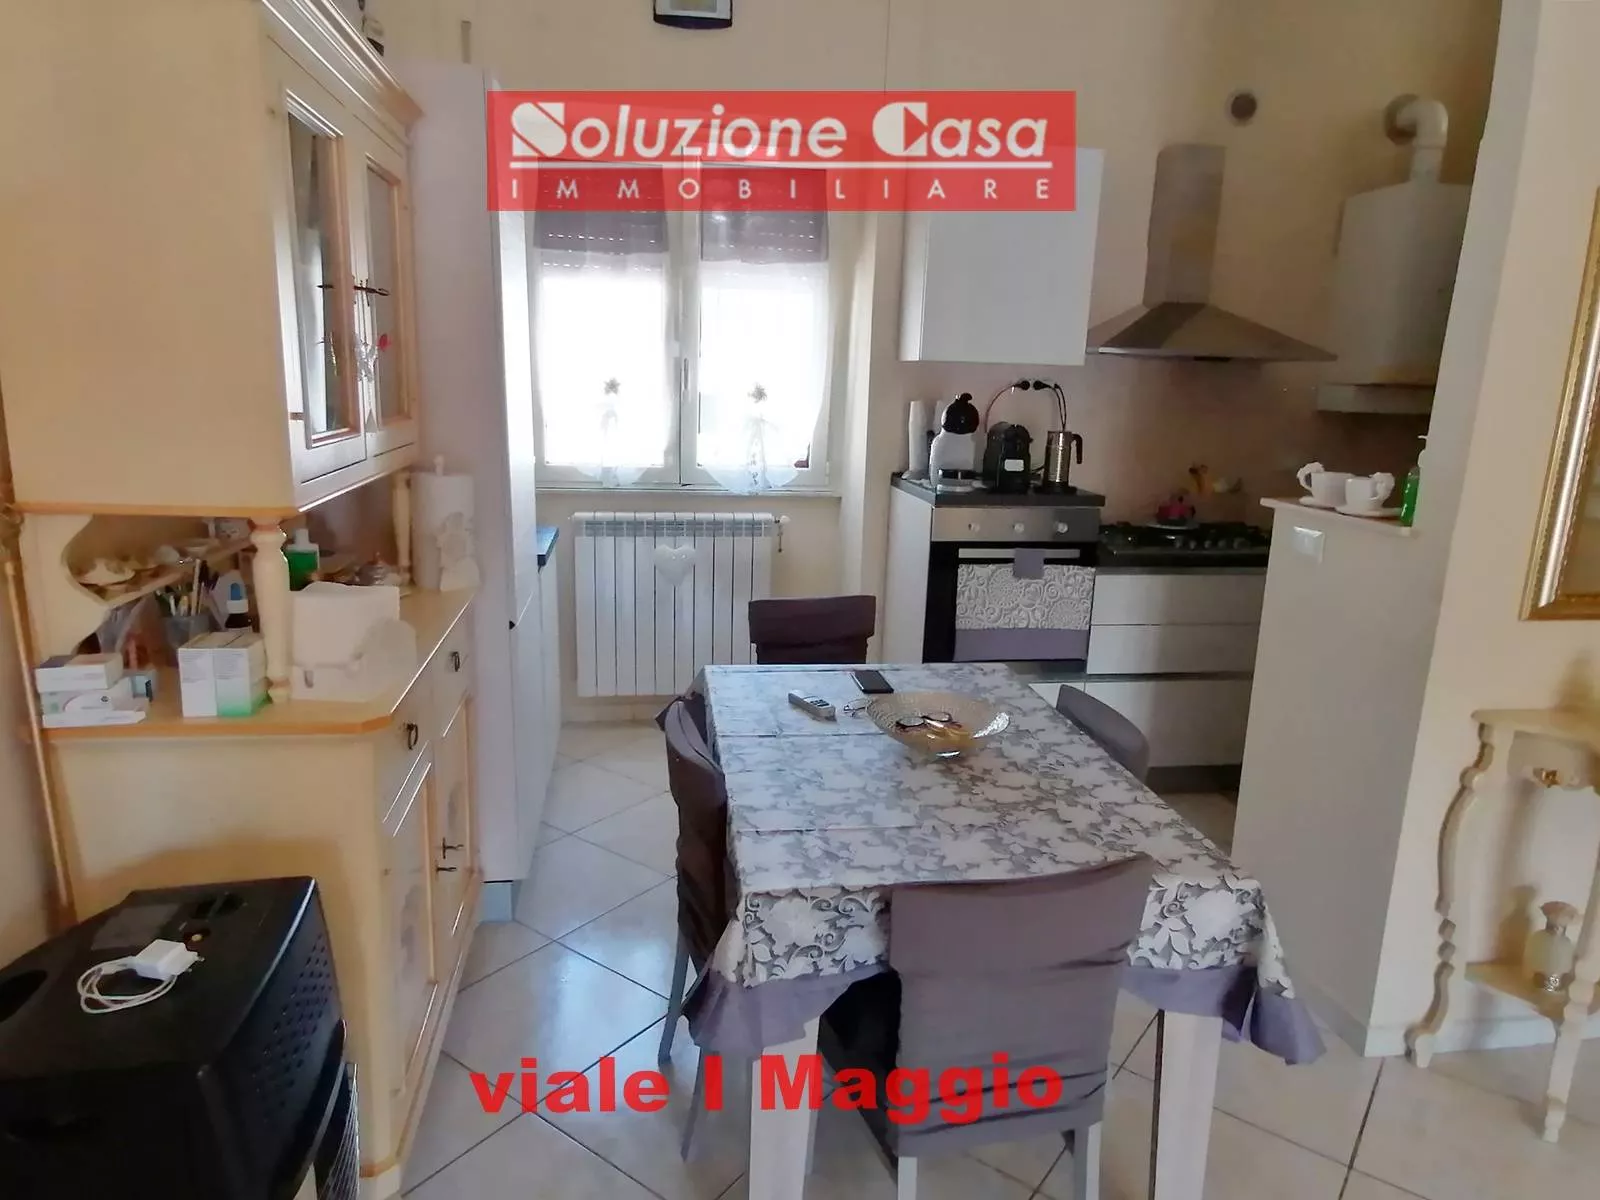 Immagine per Appartamento in vendita a Canosa di Puglia Viale Primo Maggio